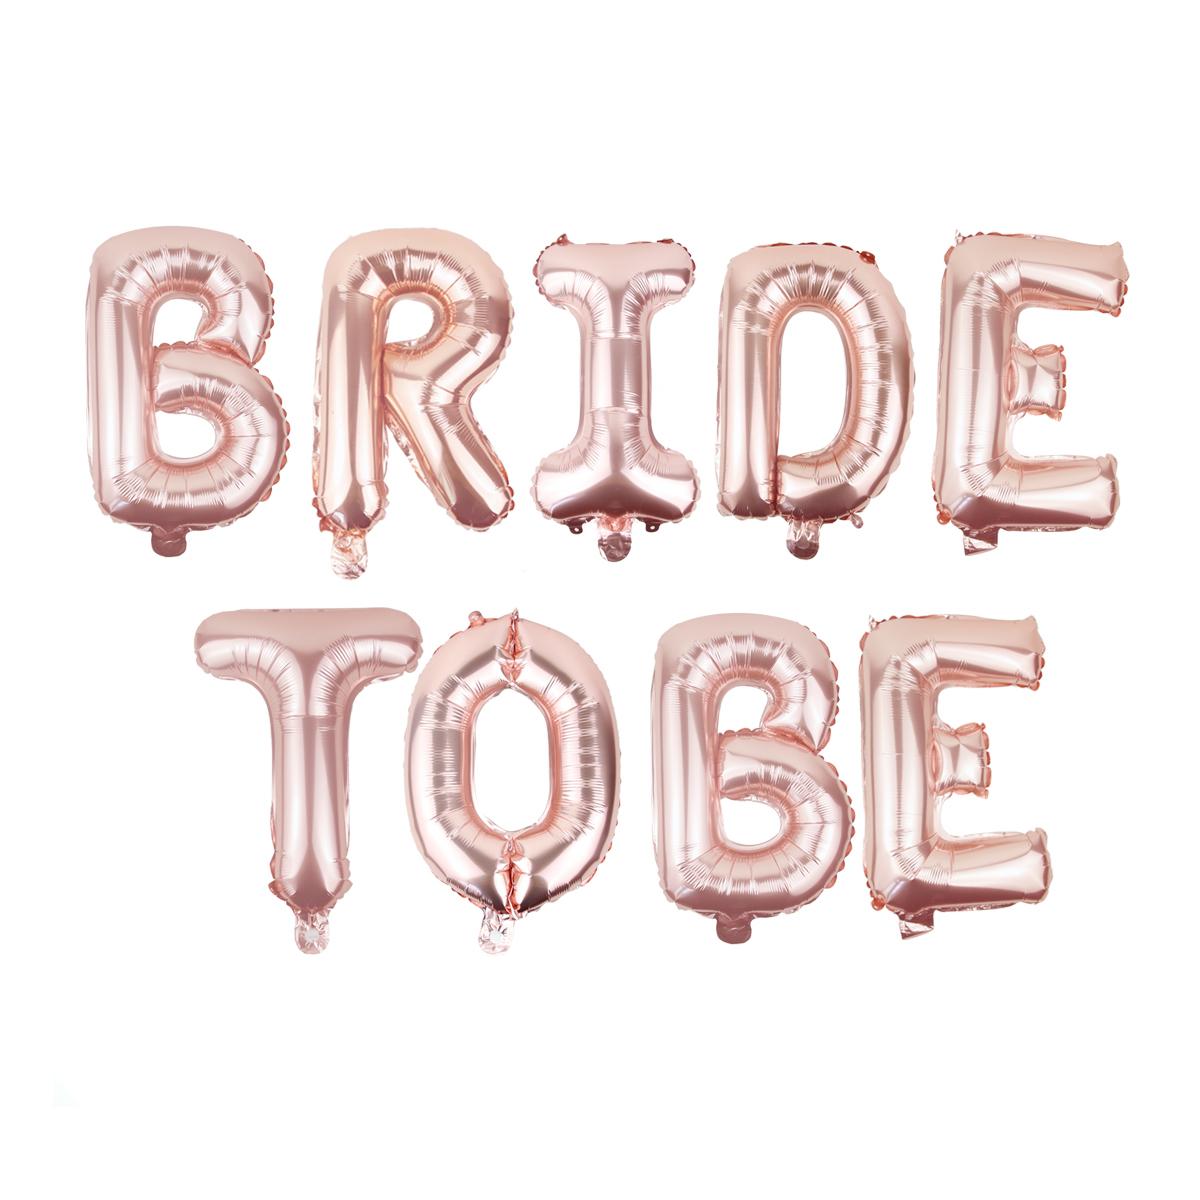 Bộ bóng trang trí tiệc chia tay độc thân chữ Bride To Be màu hồng ctdt04